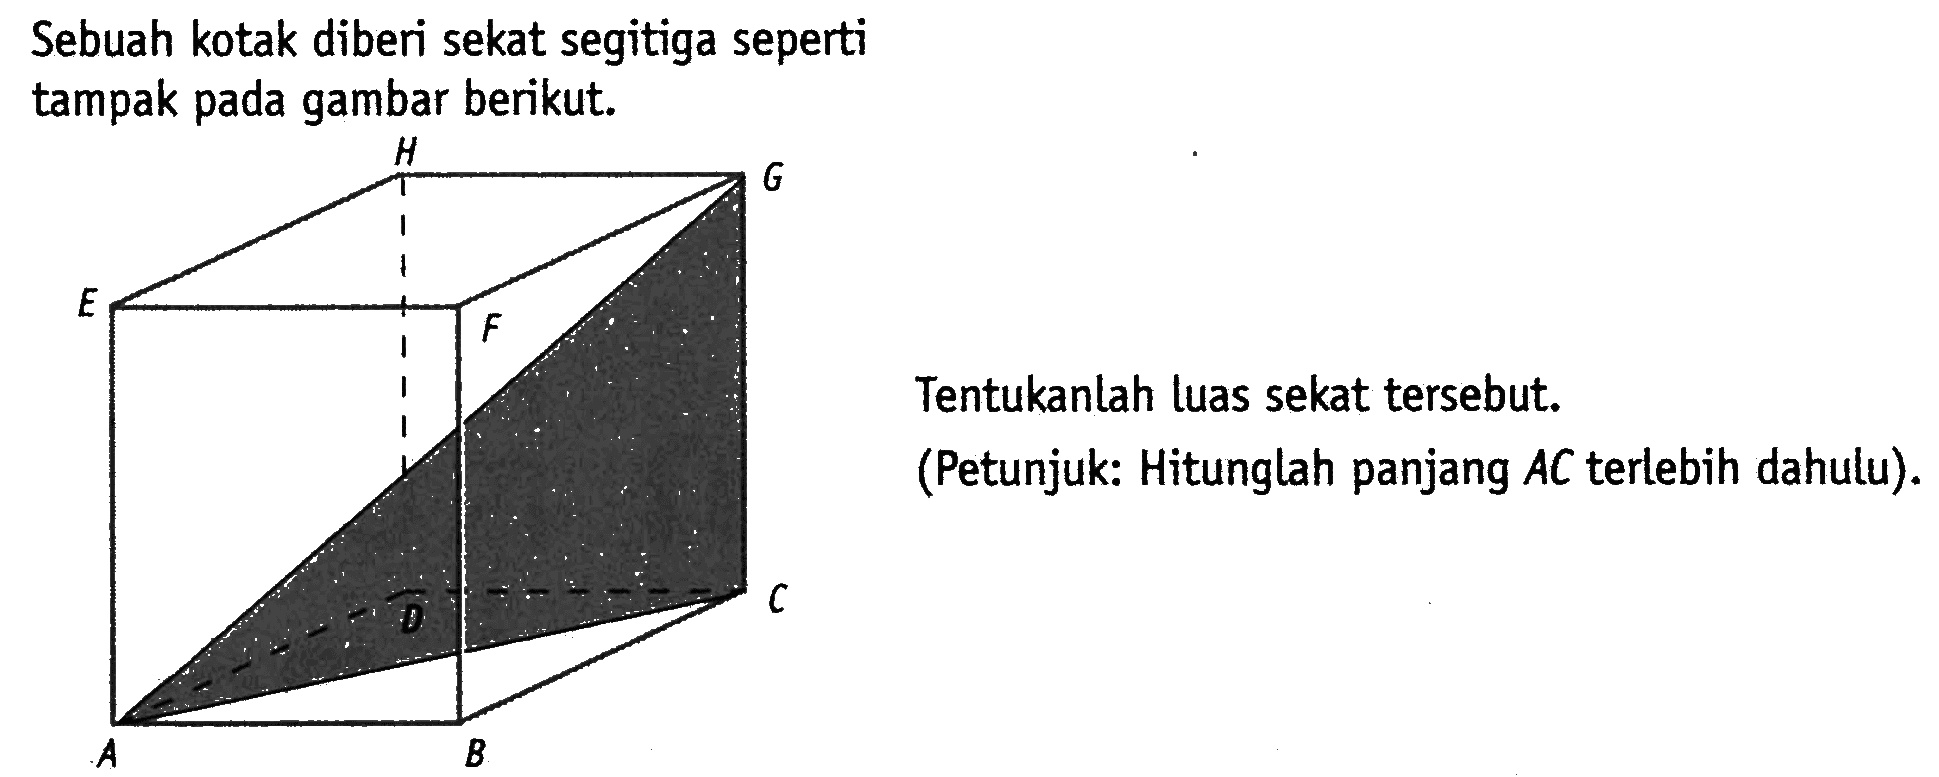 Sebuah kotak diberi sekat segitiga seperti tampak pada gambar berikut.
Tentukanlah luas sekat tersebut.
(Petunjuk: Hitunglah panjang  A C  terlebih dahulu).